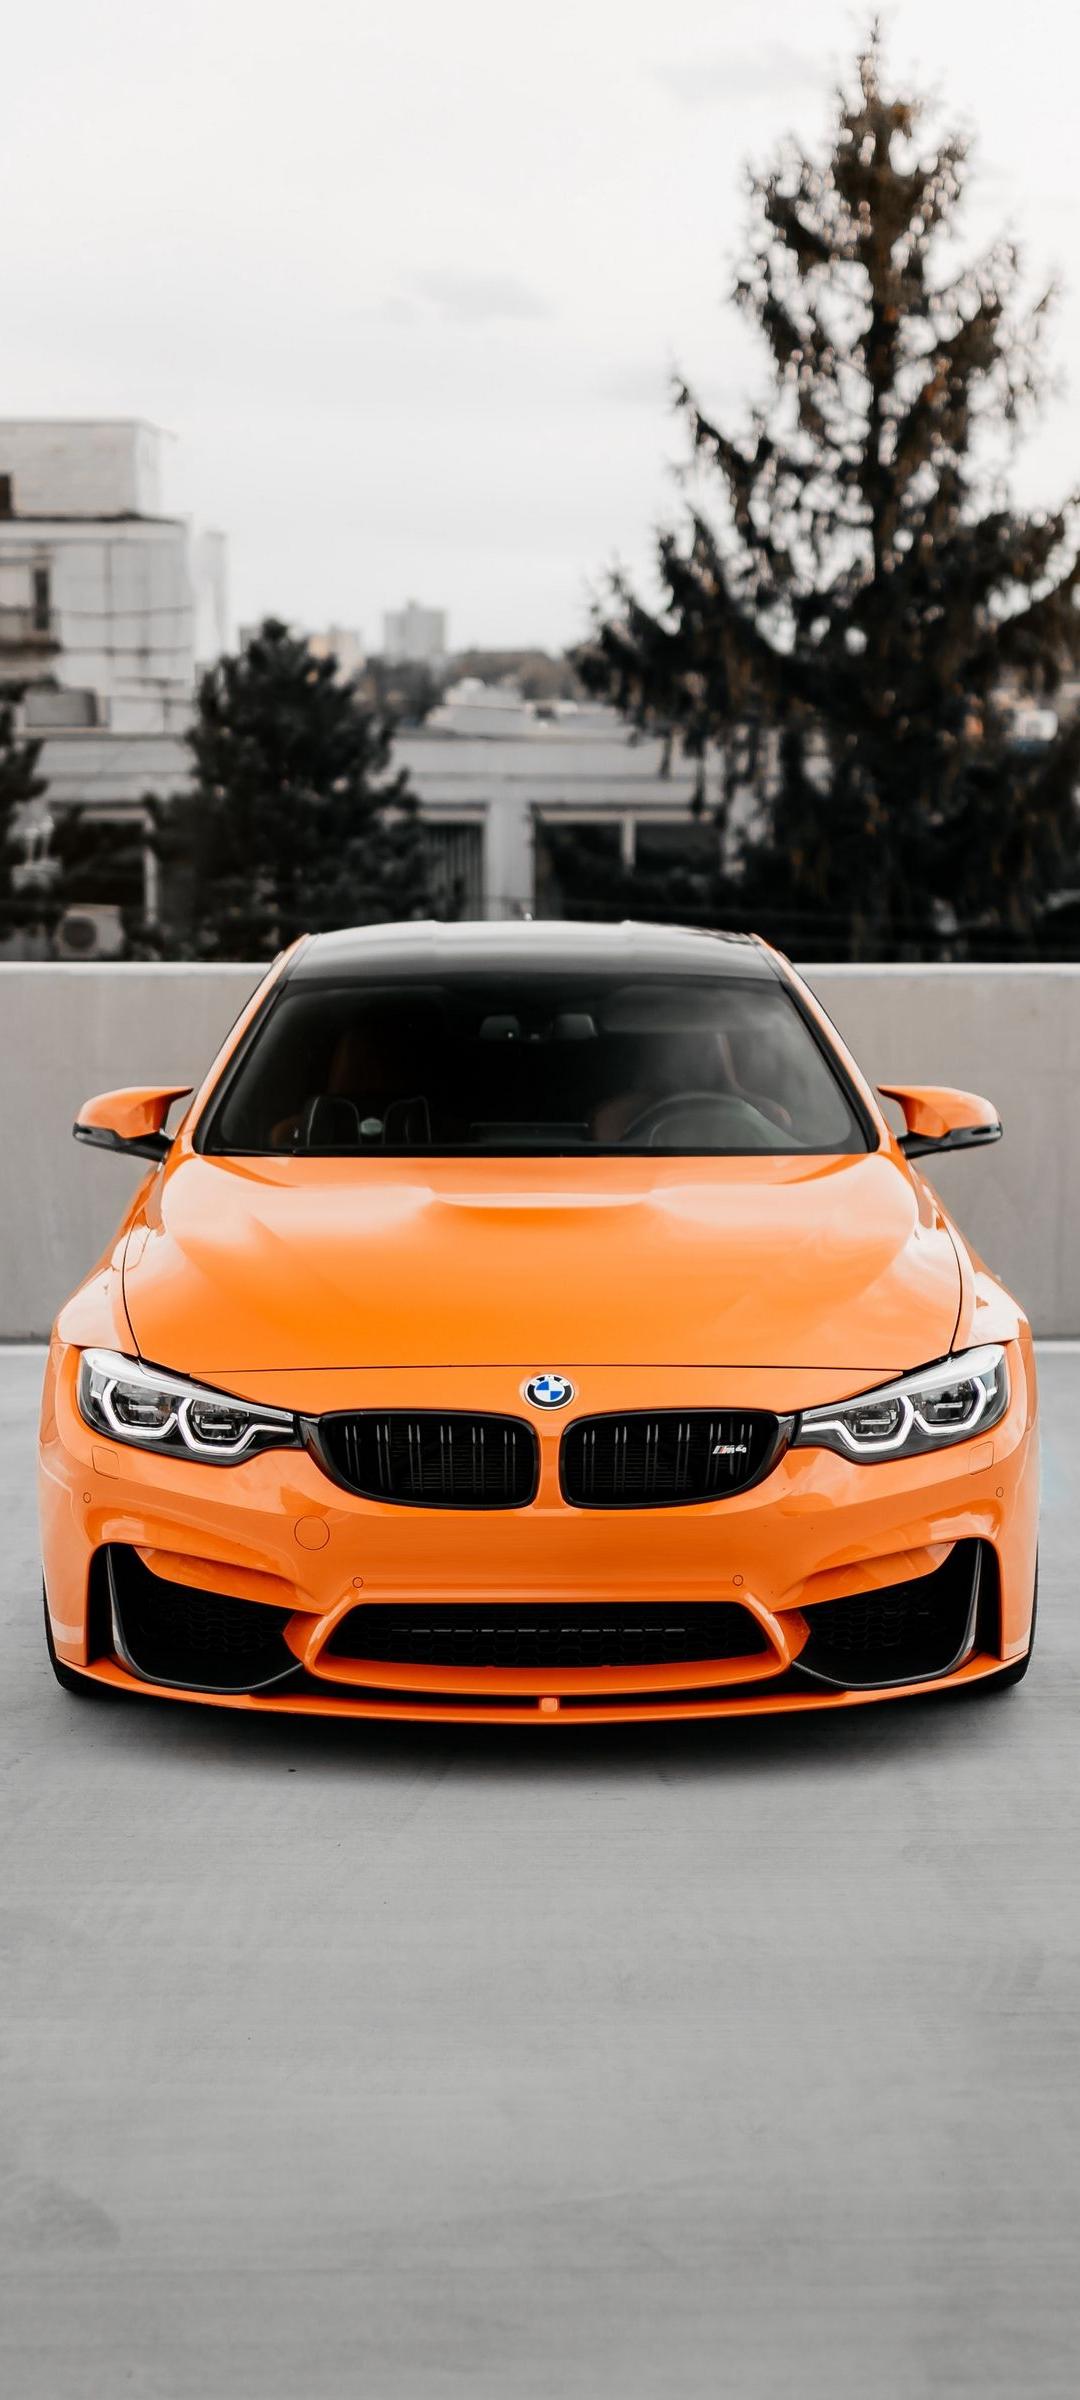 BMW Yellow Car Wallpaper